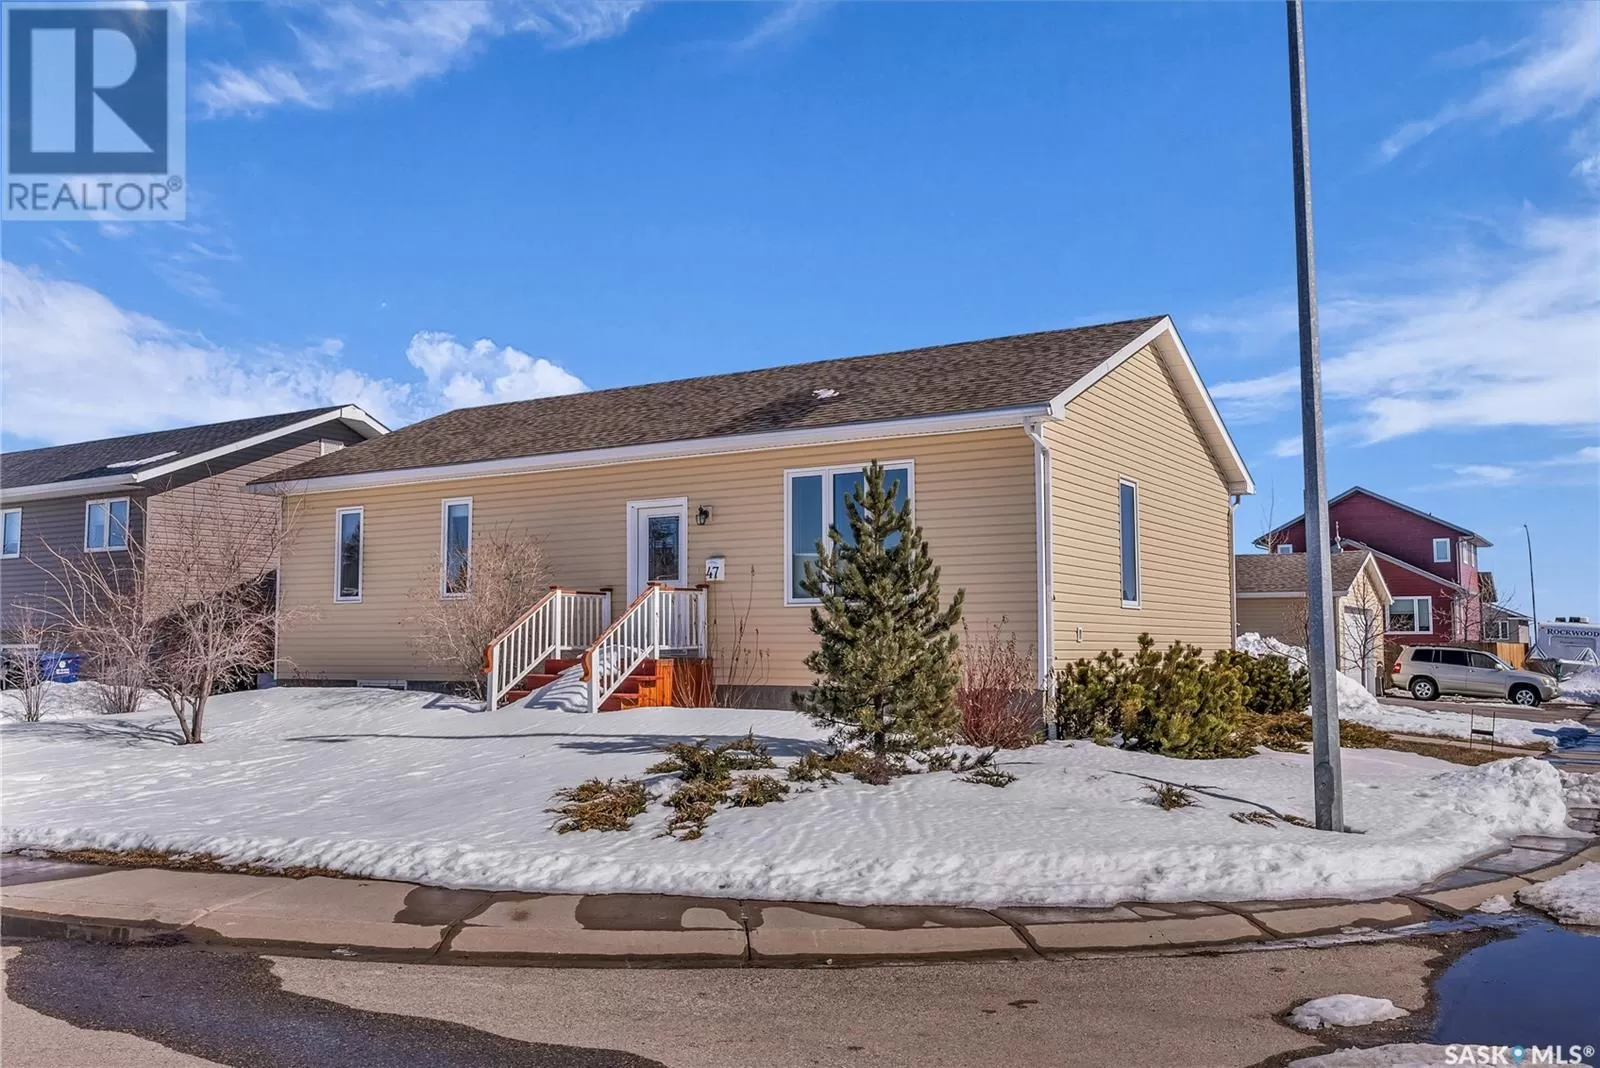 House for rent: 47 6th Avenue S, Langham, Saskatchewan S0K 2L0